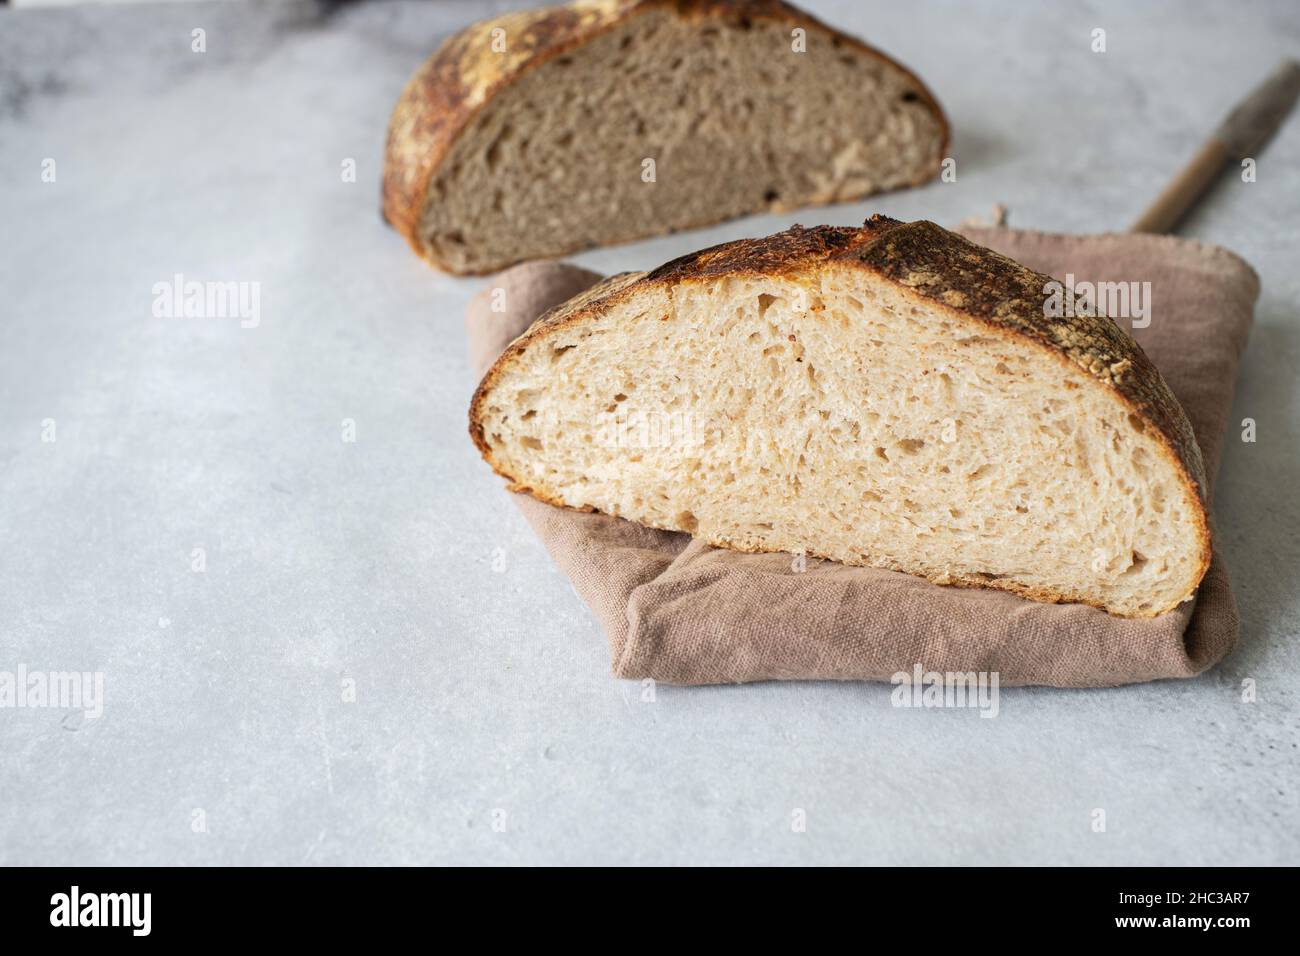 Homemade artisanal sourdough bread. Healthy home baking concept. Stock Photo